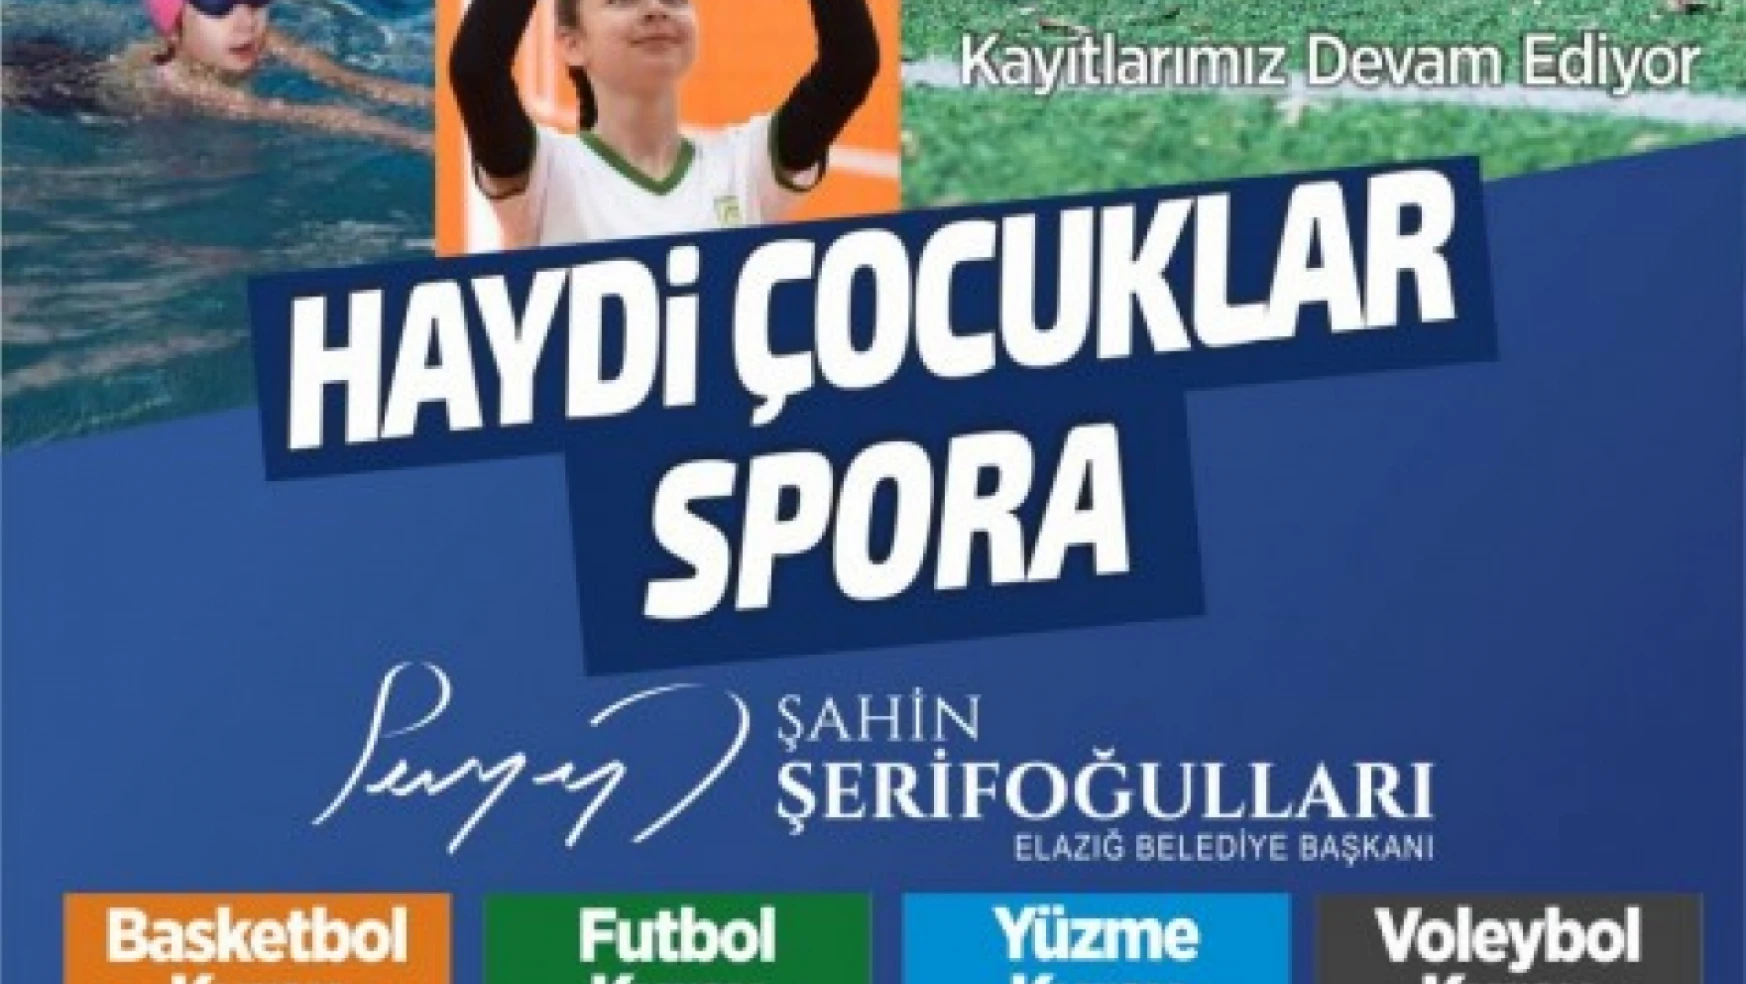 Elazığ Belediyesinin ücretsiz yaz spor kursları başlıyor